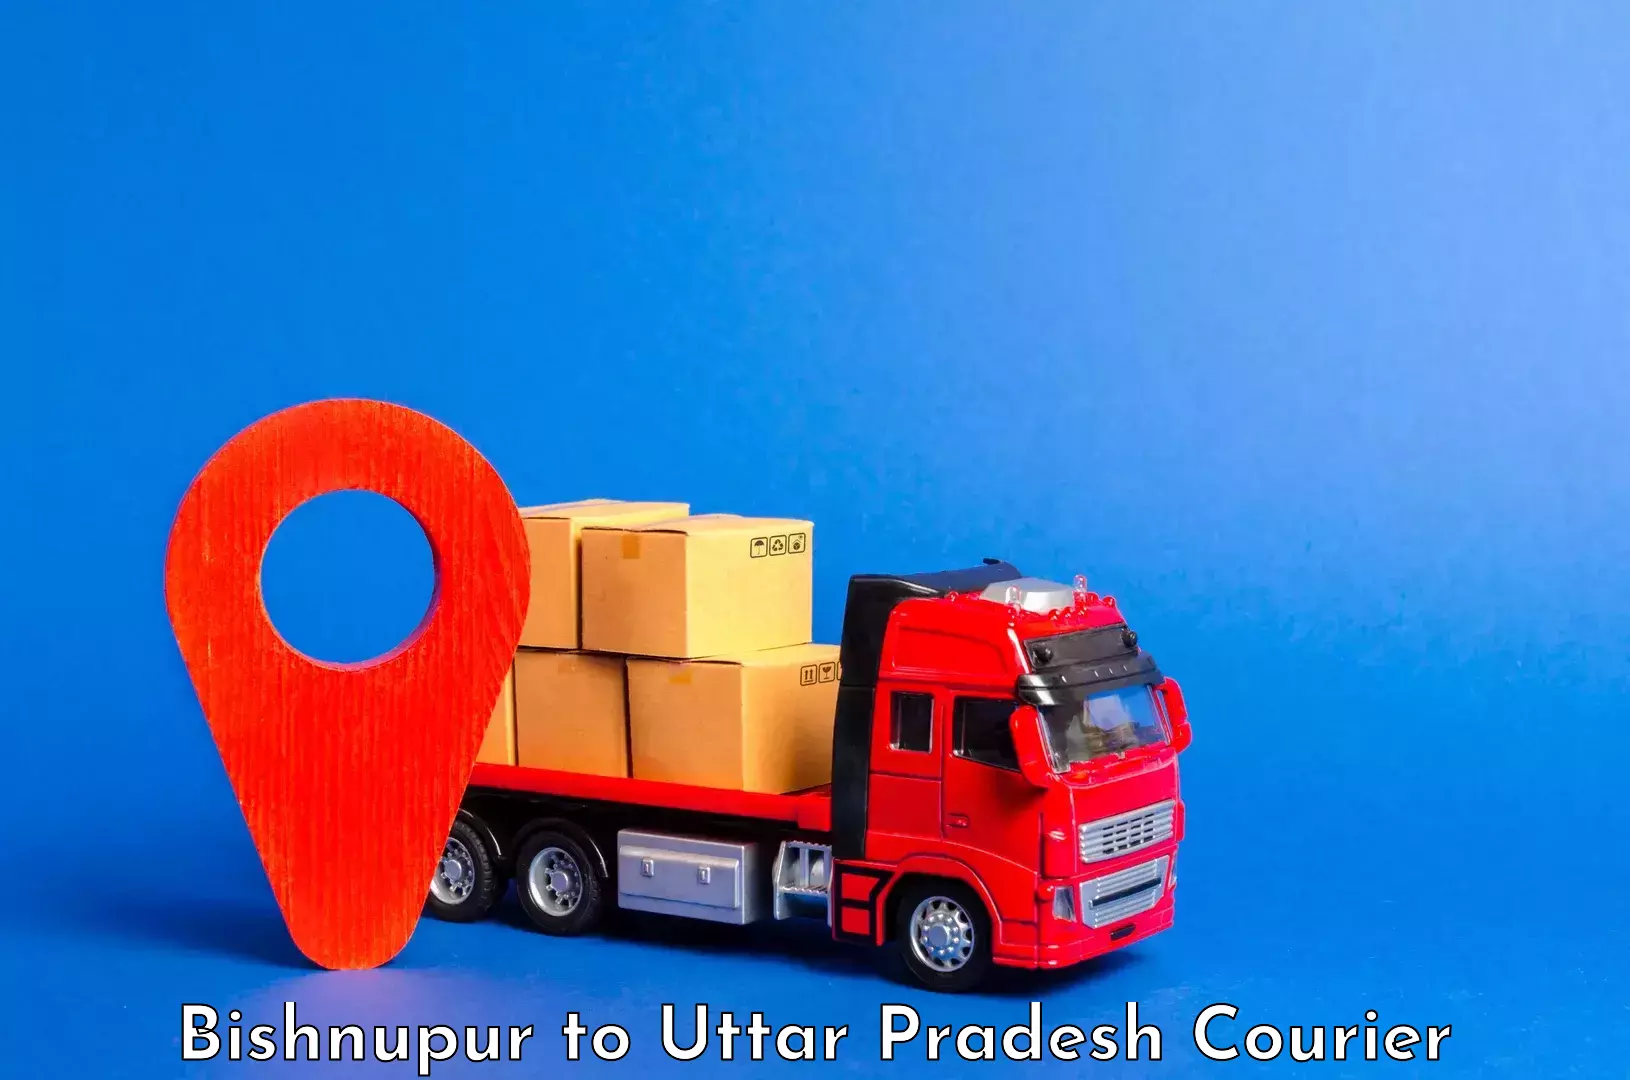 Luggage shipment tracking Bishnupur to Dataganj